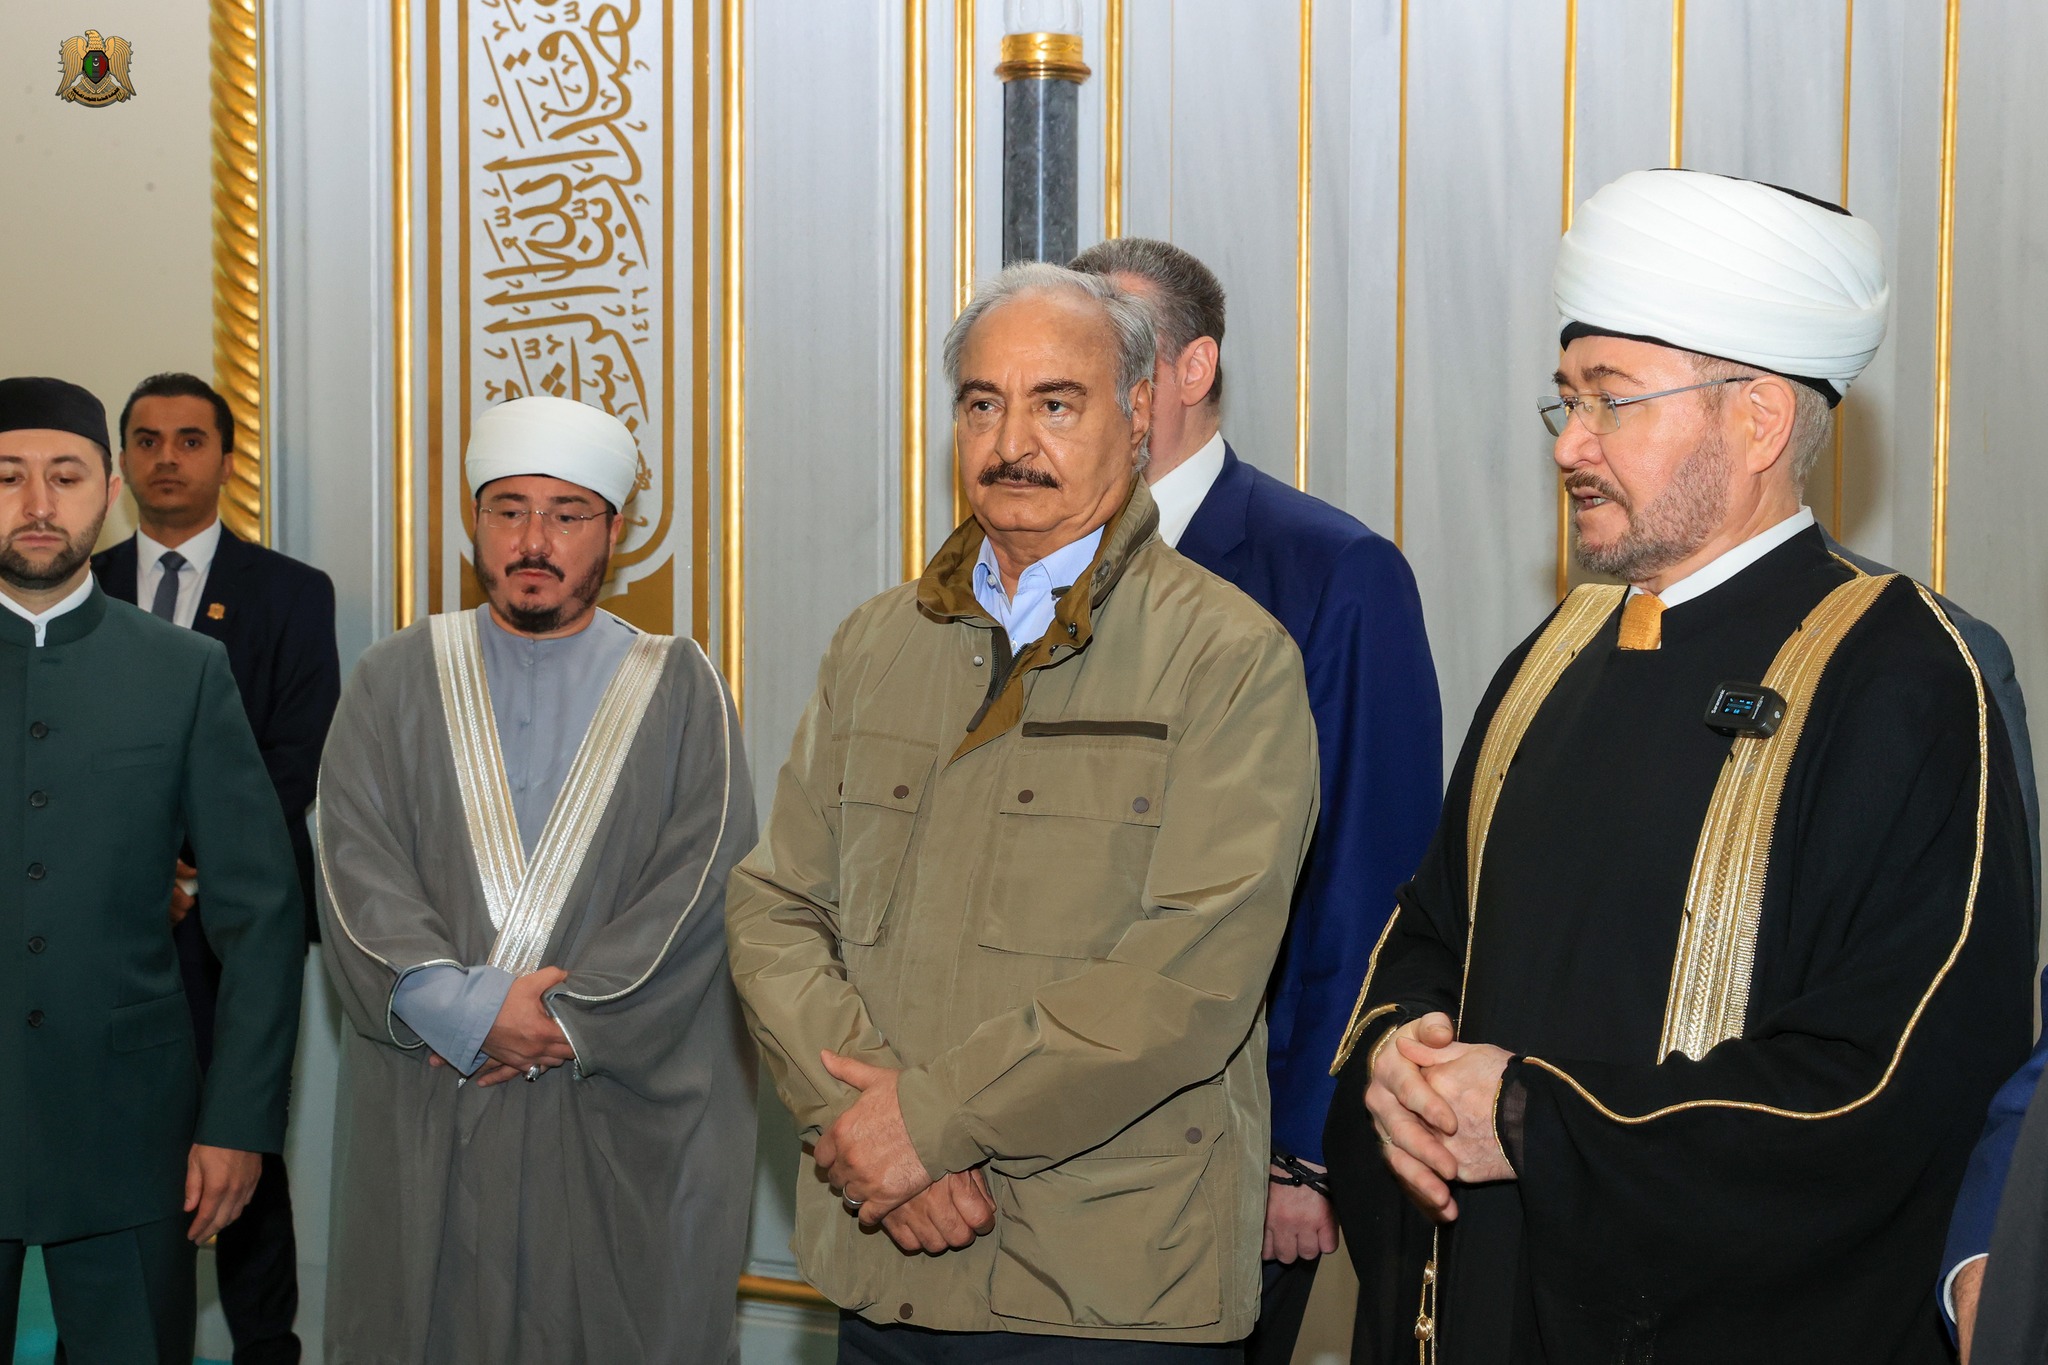 القائد العام يقوم بزيارة مسجد موسكو الجامع